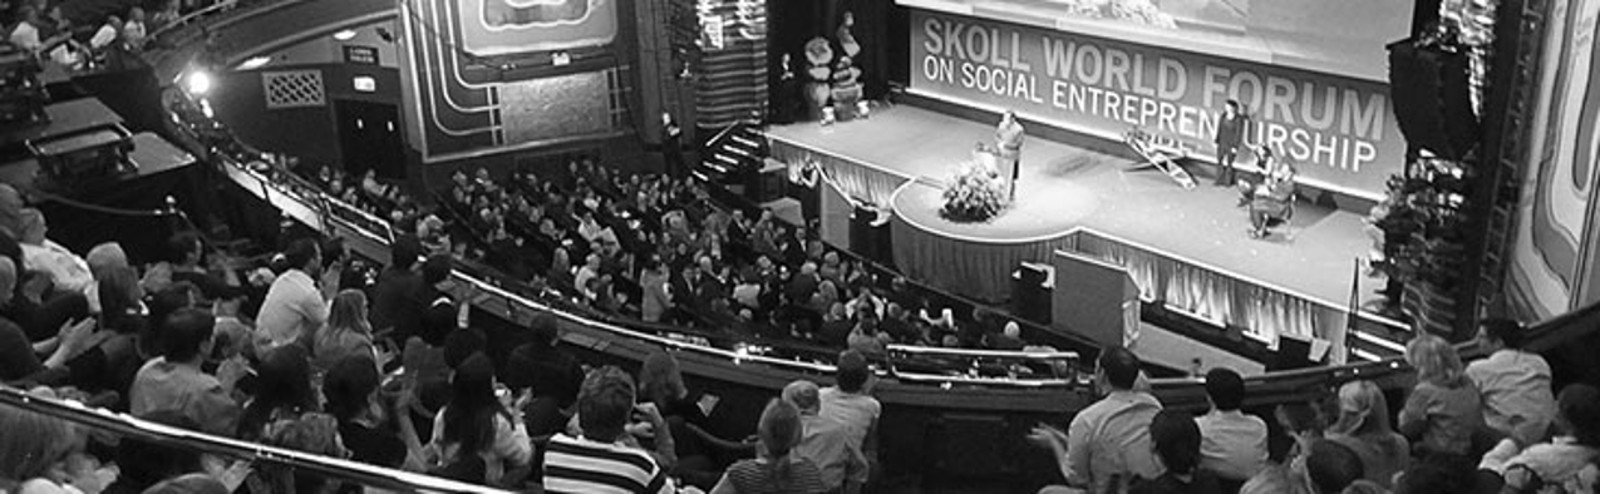 Skoll World Forum B&W Scaled